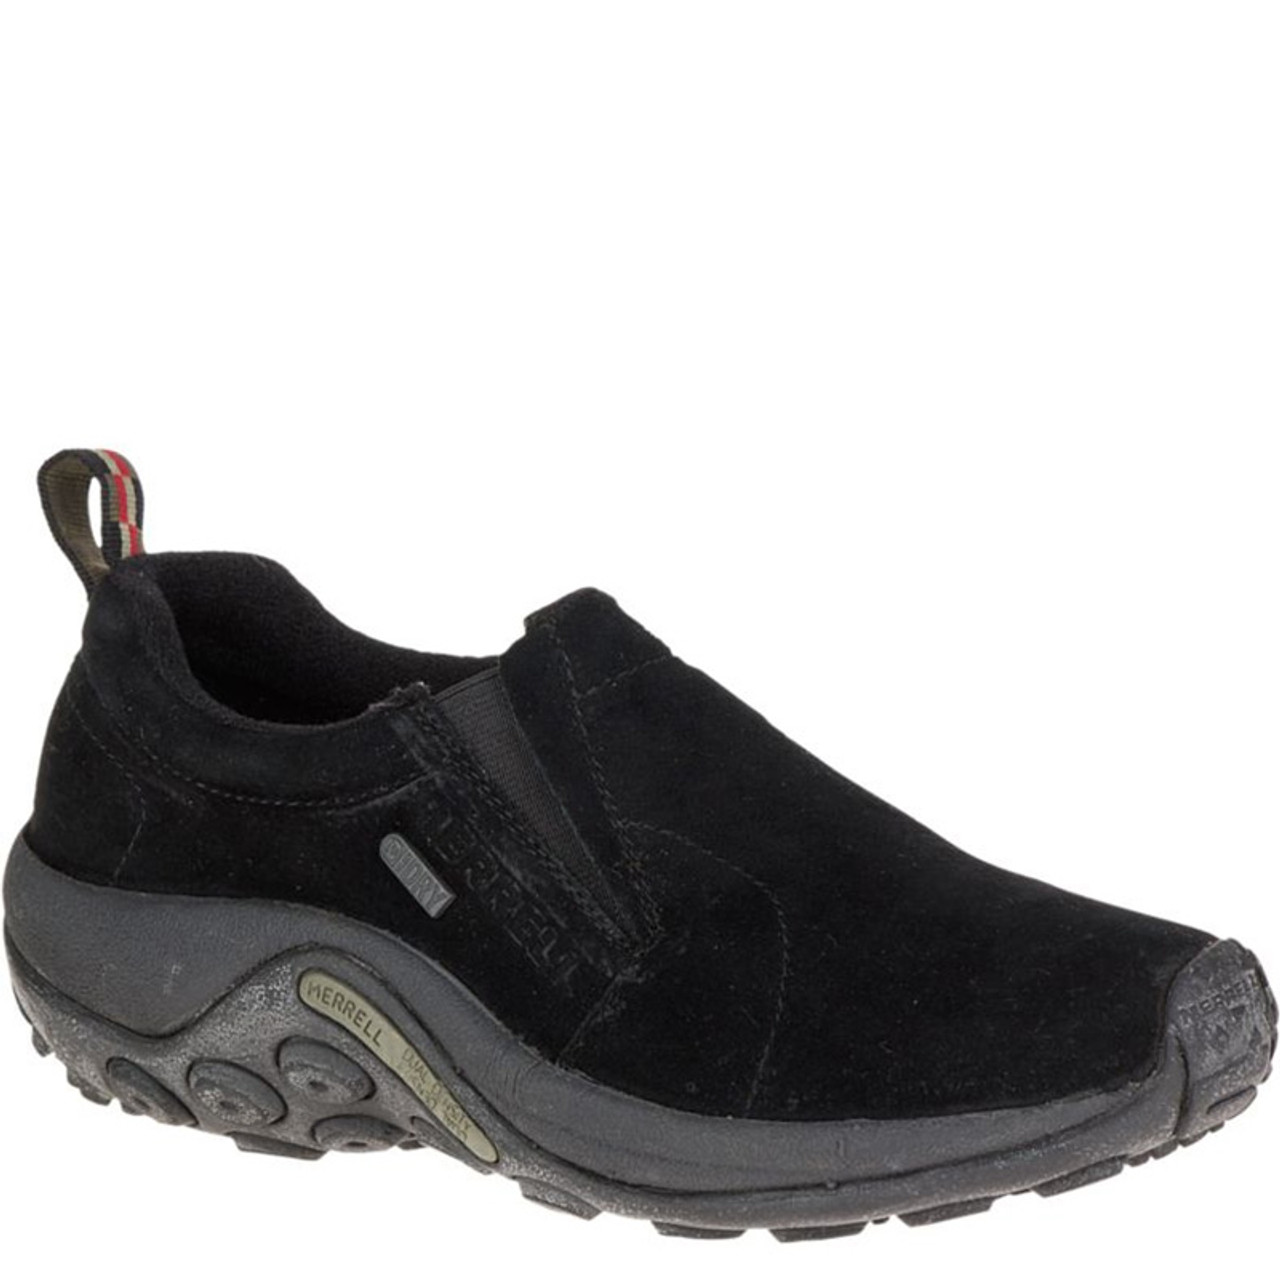 Merrell J60826 Women's JUNGLE MOC Slip-On Shoes Black Suede - Family Footwear